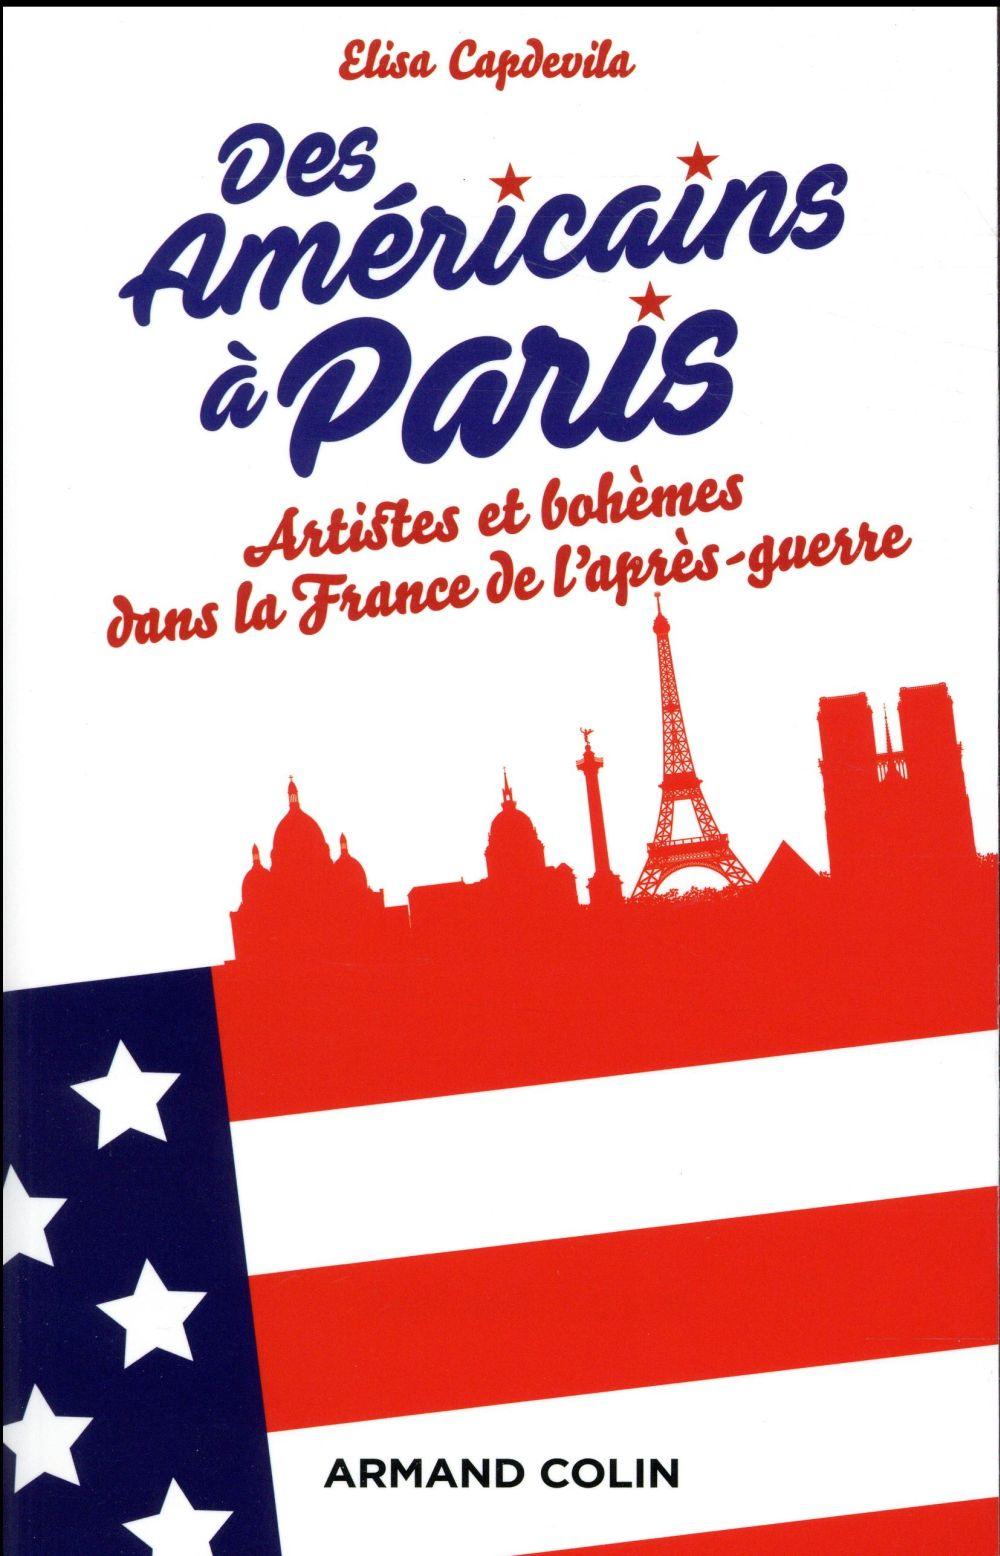 Vente Livre :                                    Des américains à Paris ; artistes et bohèmes dans la France de l'après-guerre
- Elisa Capdevila                                     